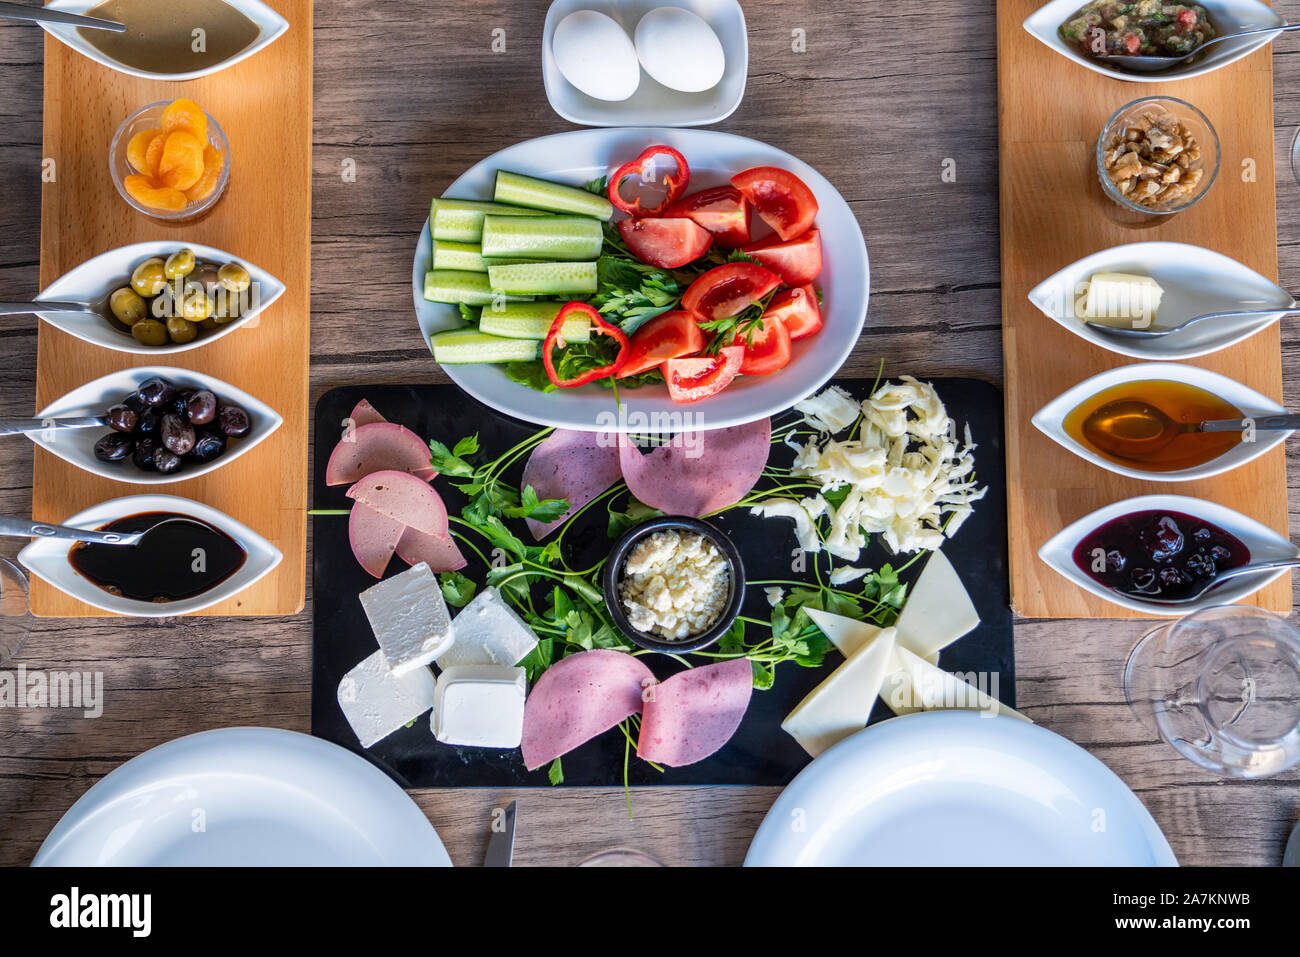 Preparazione di una ricca colazione mediterranea per un gruppo. Foto Stock